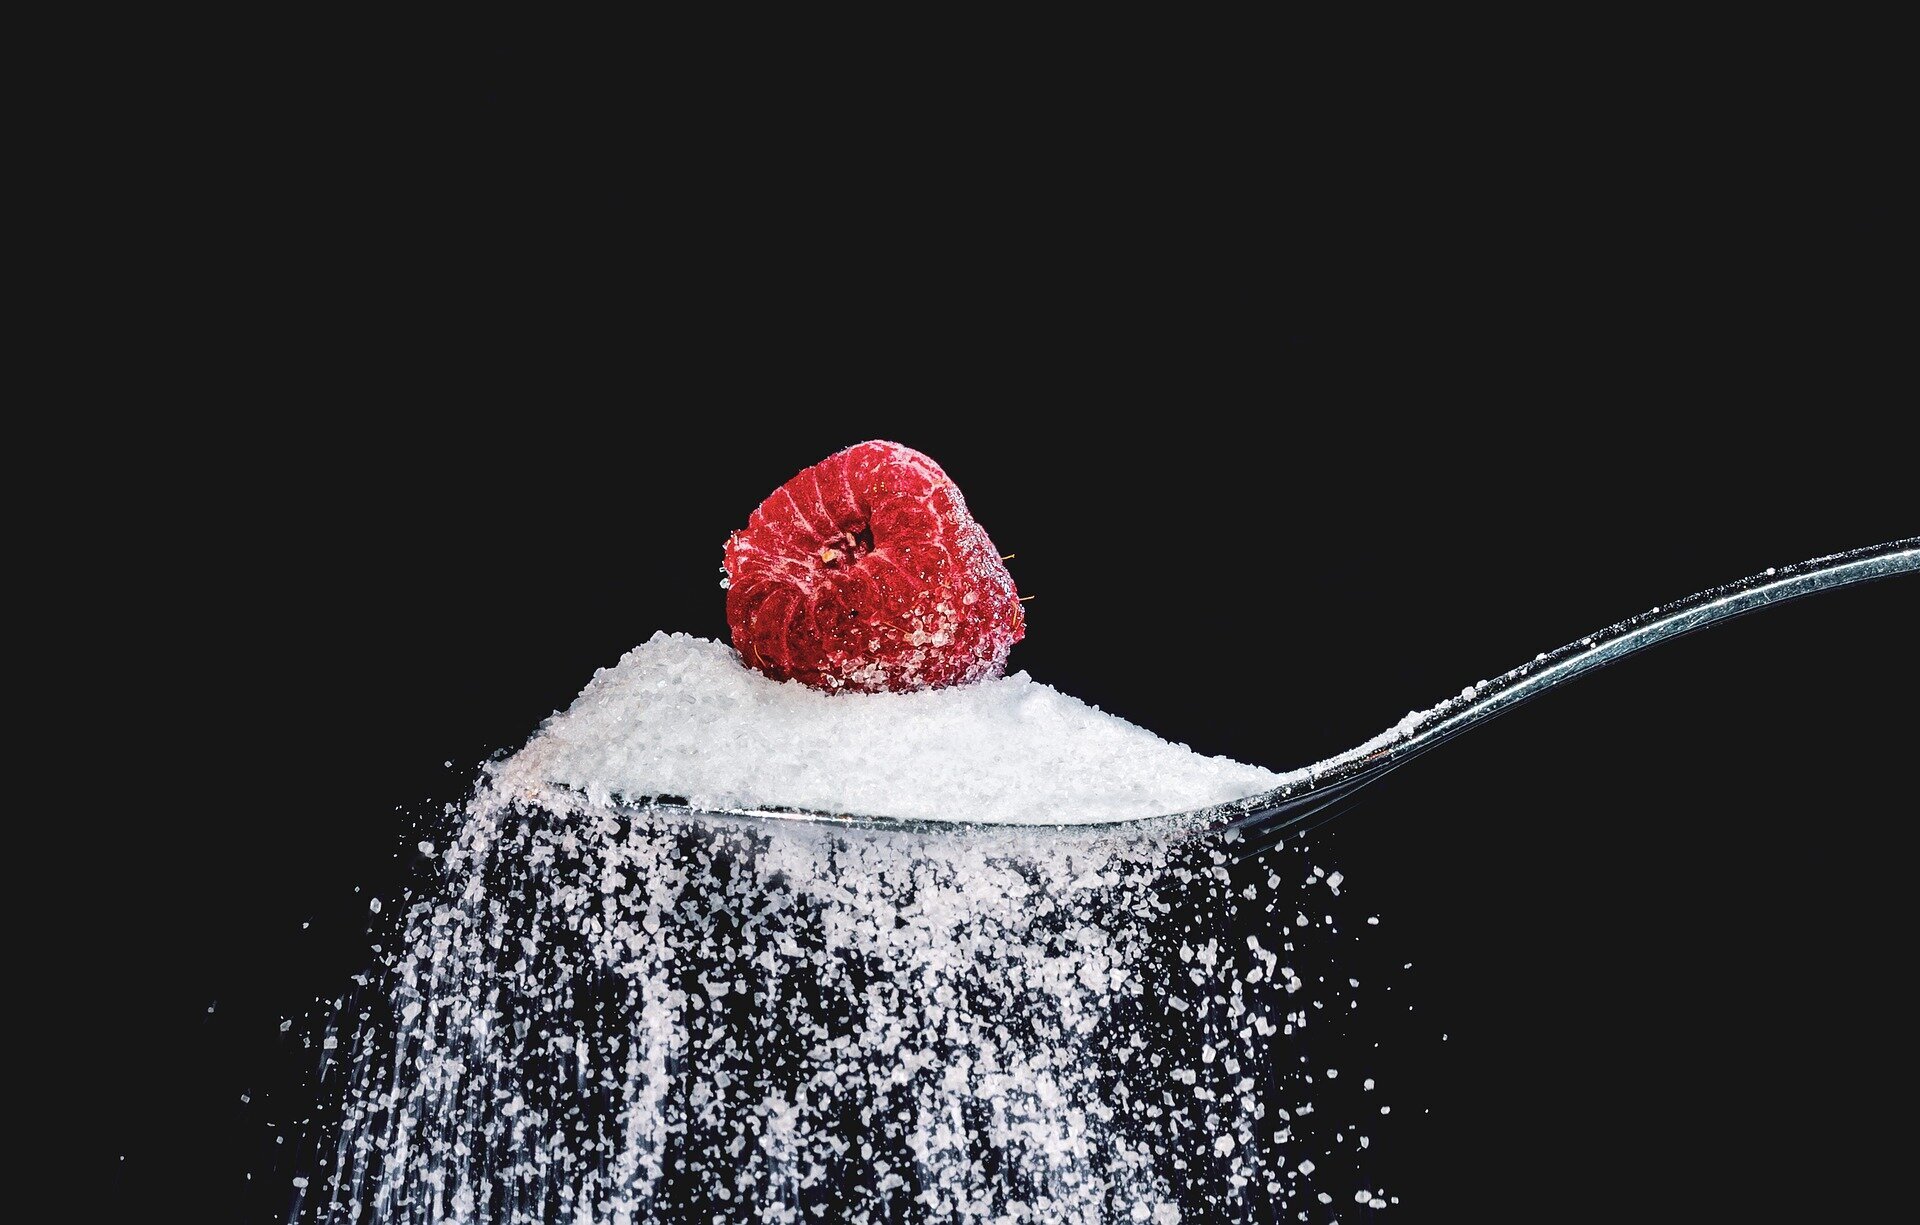 Чем вреден и полезен сахар для здоровья, согласно науке